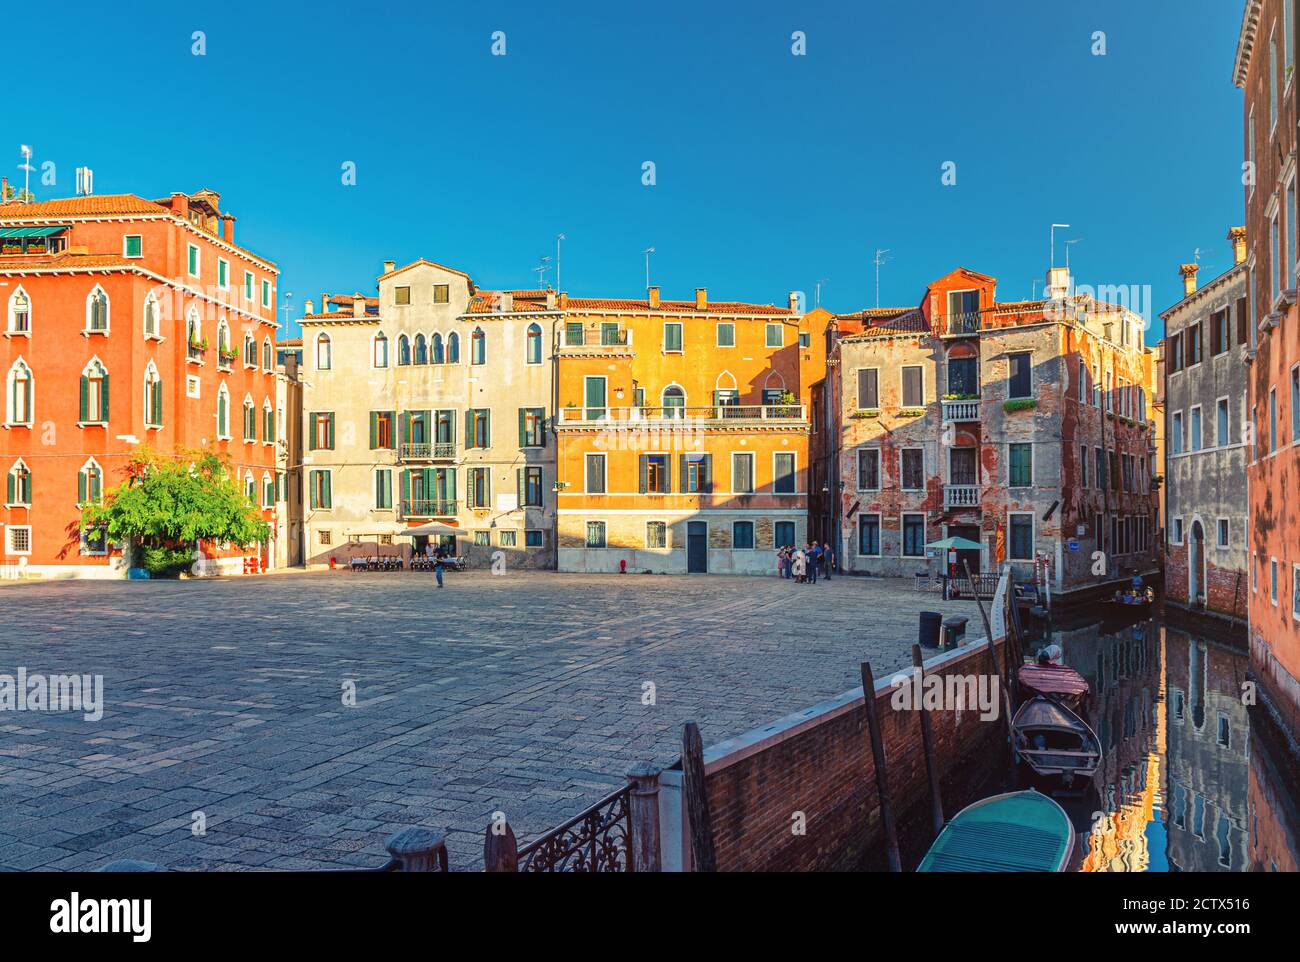 Place Campo San Anzolo Sant'Angelo avec des bâtiments typiquement italiens d'architecture vénitienne et un canal d'eau étroit dans le centre historique de Venise San Marco Sestiere, région de Vénétie, Italie du Nord Banque D'Images